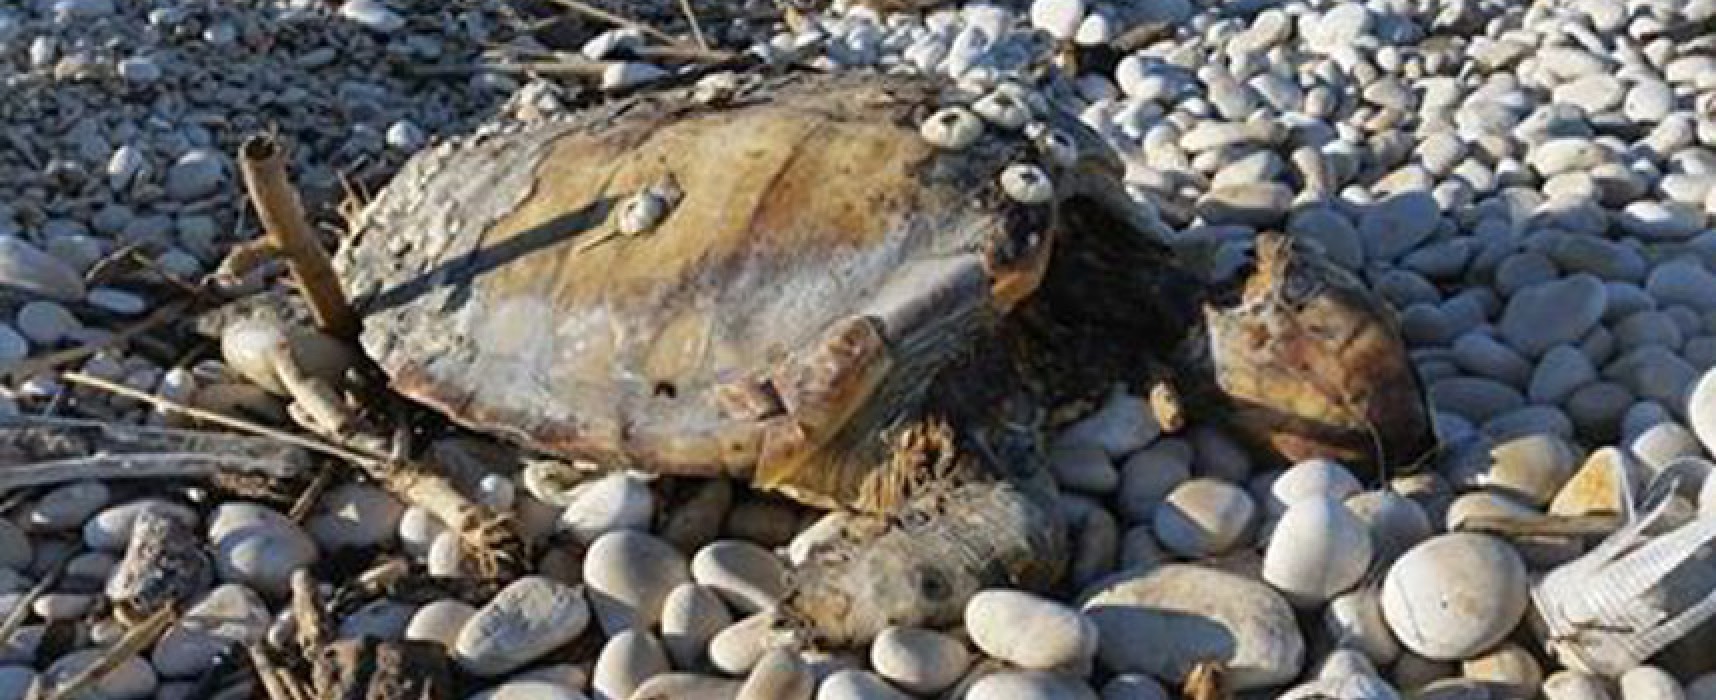 Carcassa di tartaruga marina ritrovata alla spiaggia “La Torretta”